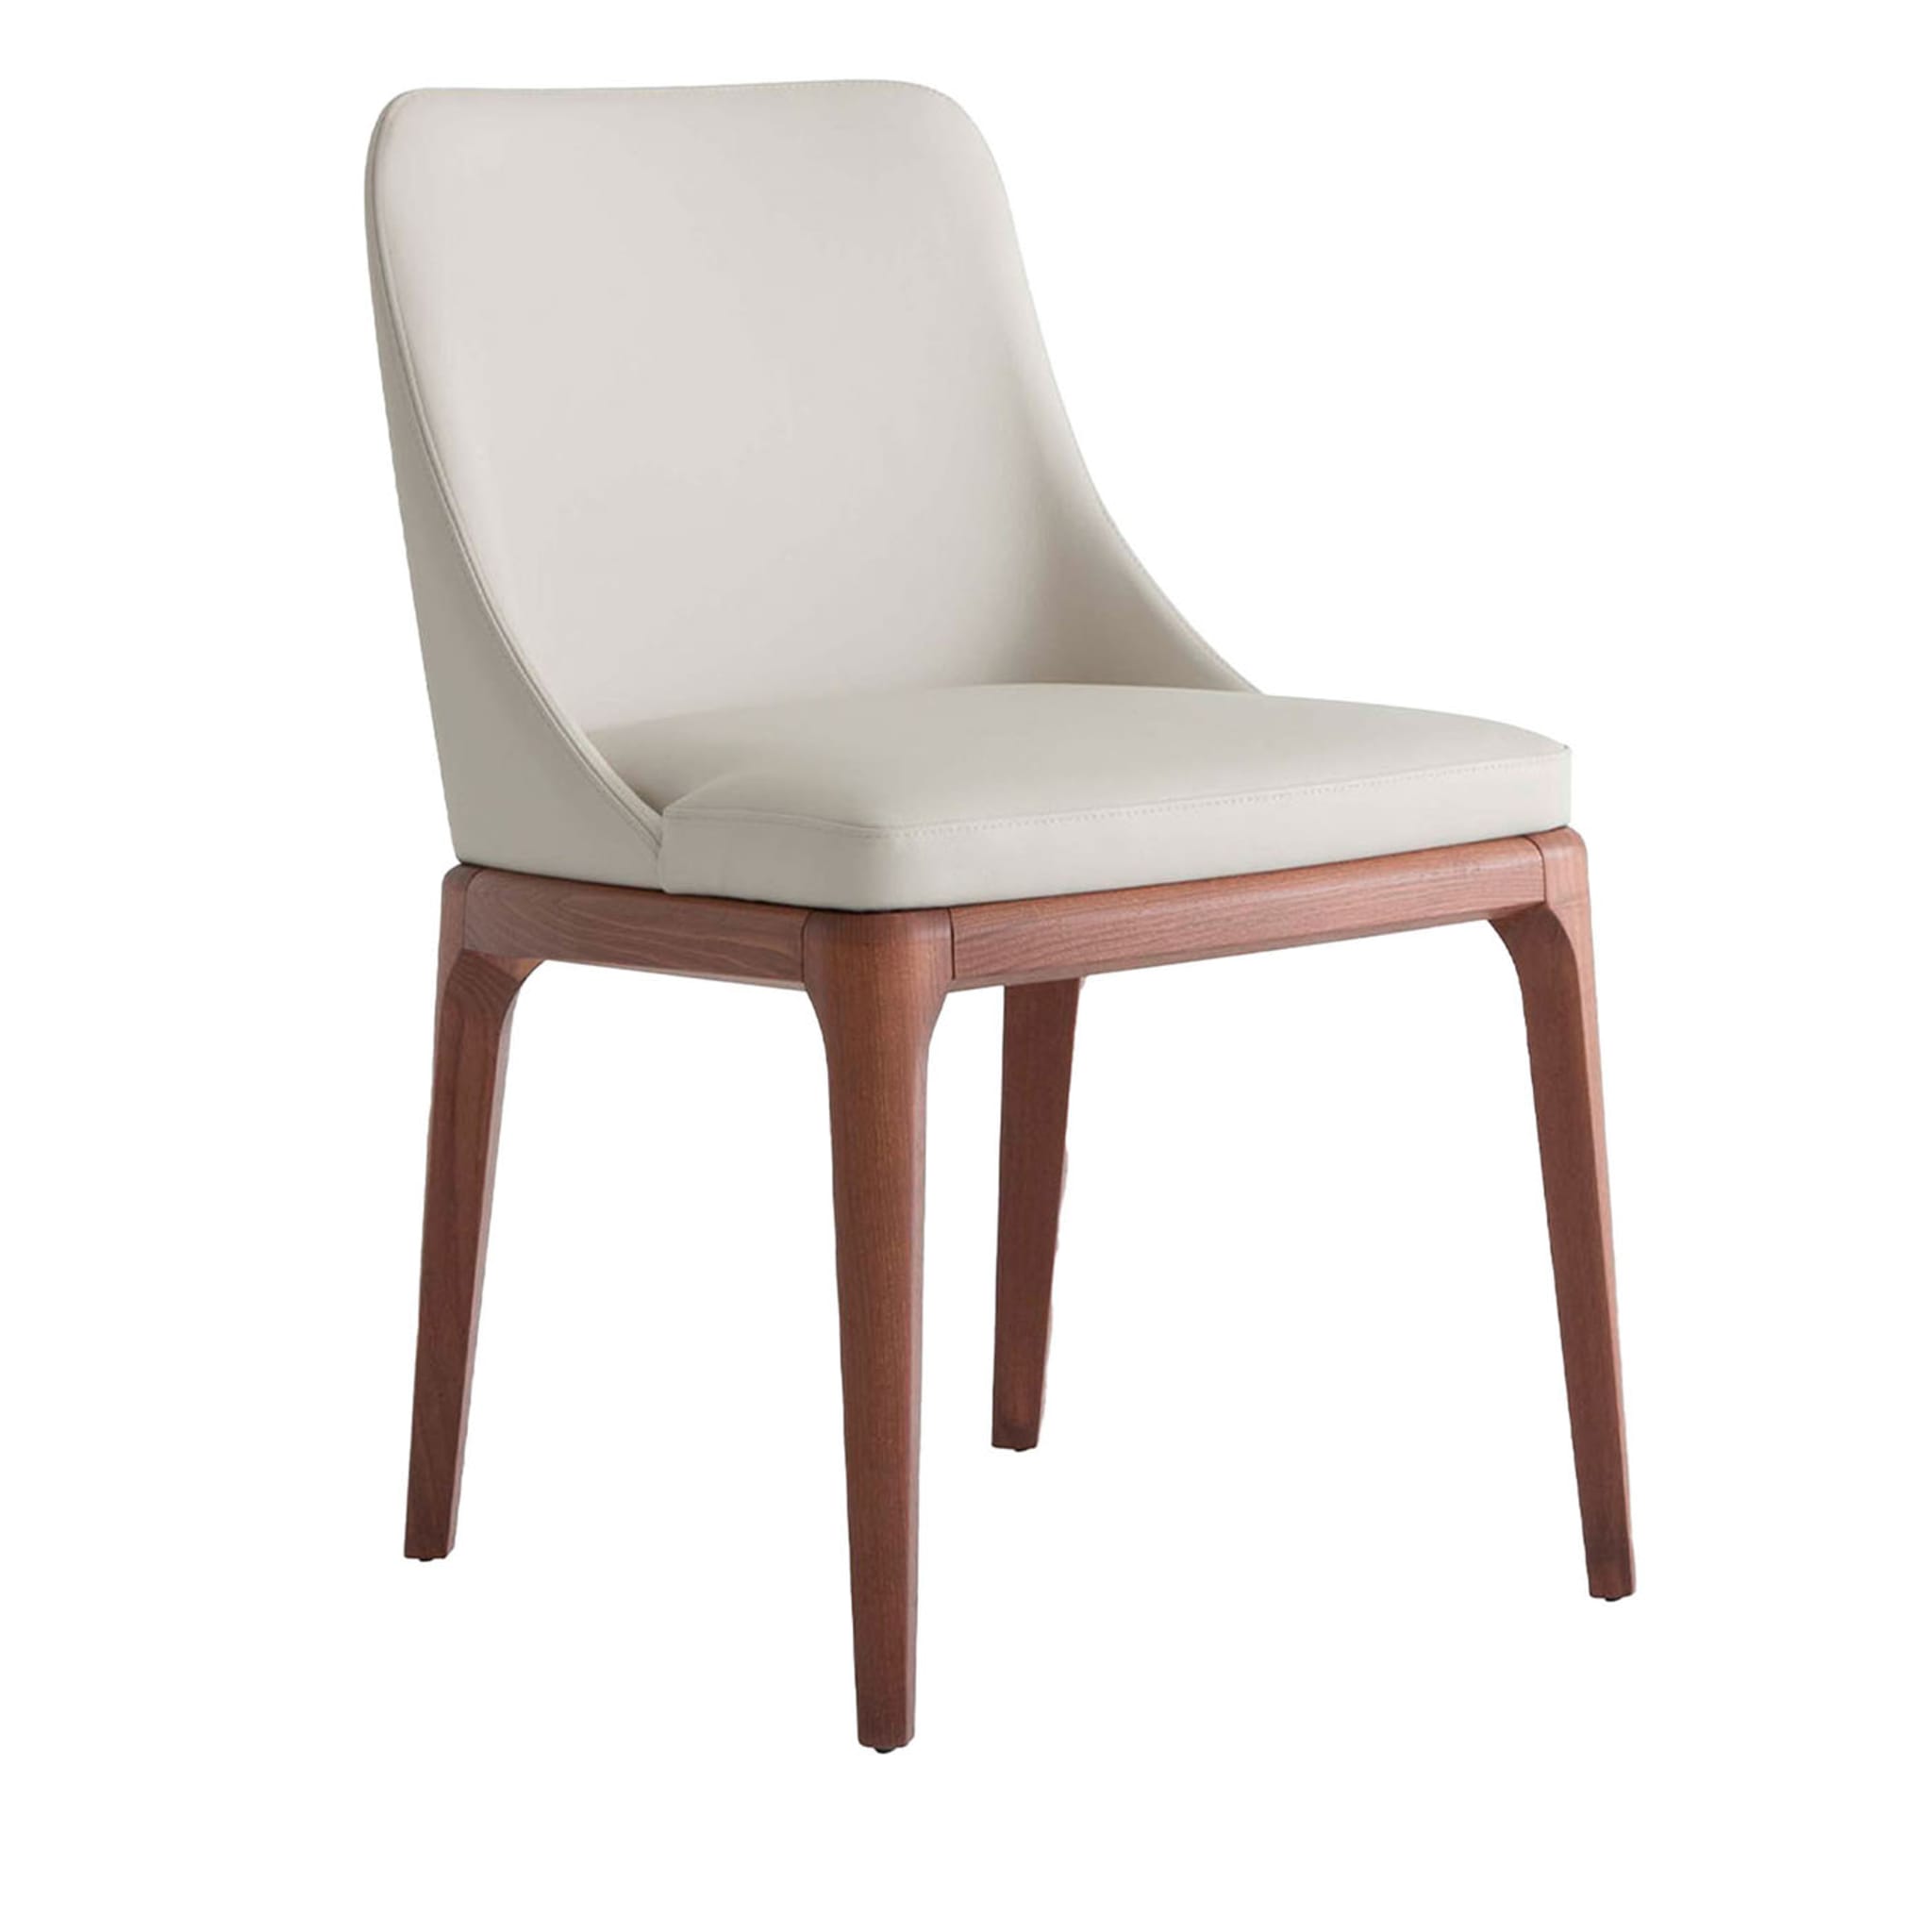 Antigona White Leather Chair - Main view